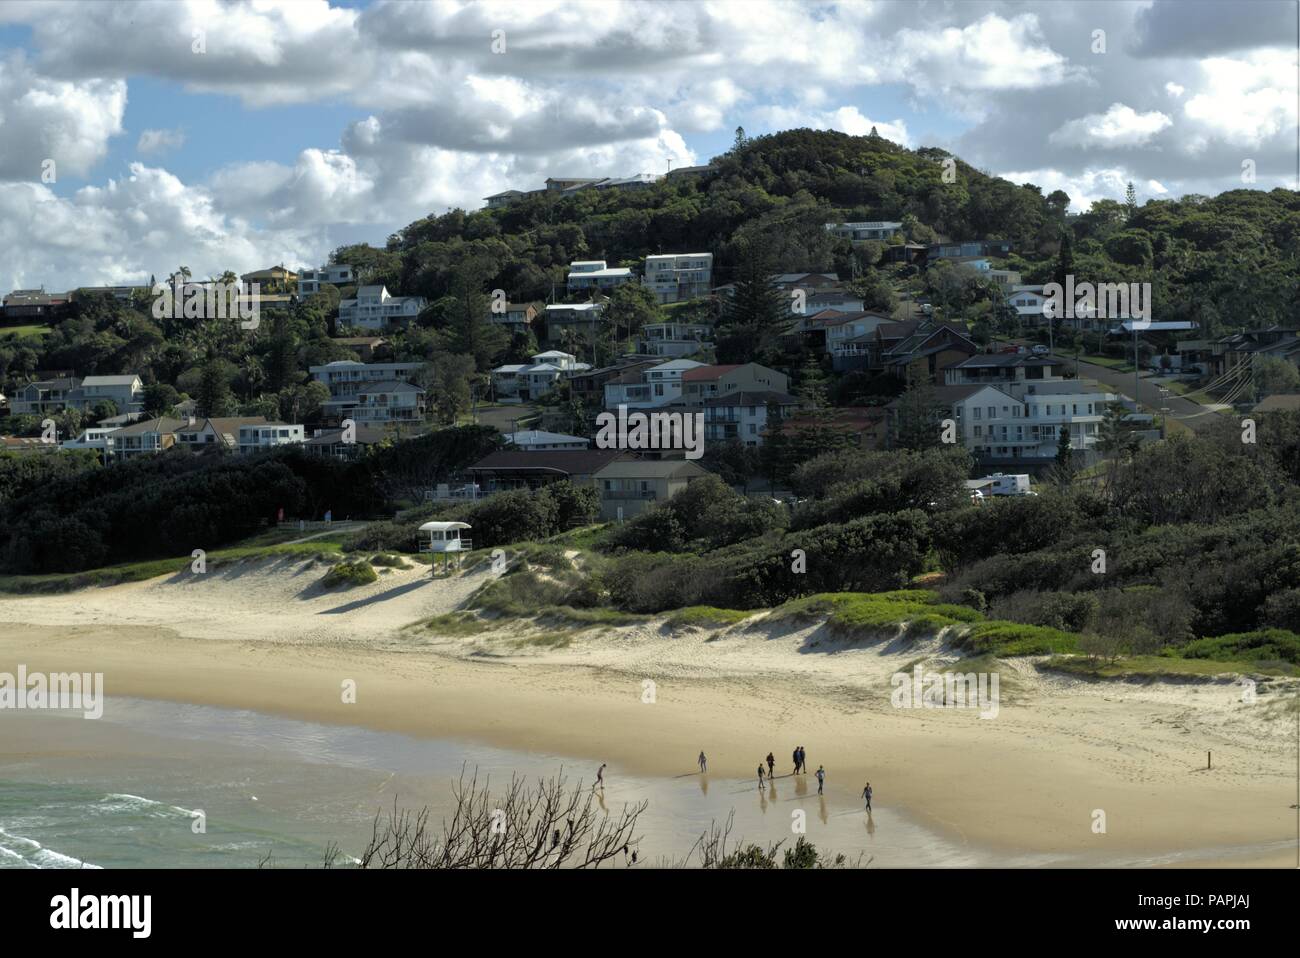 Leuchtturm und Strand Strand mit Blick auf Immobilien in New South Wales Küstenort Port Macquarie in Australien. Stockfoto